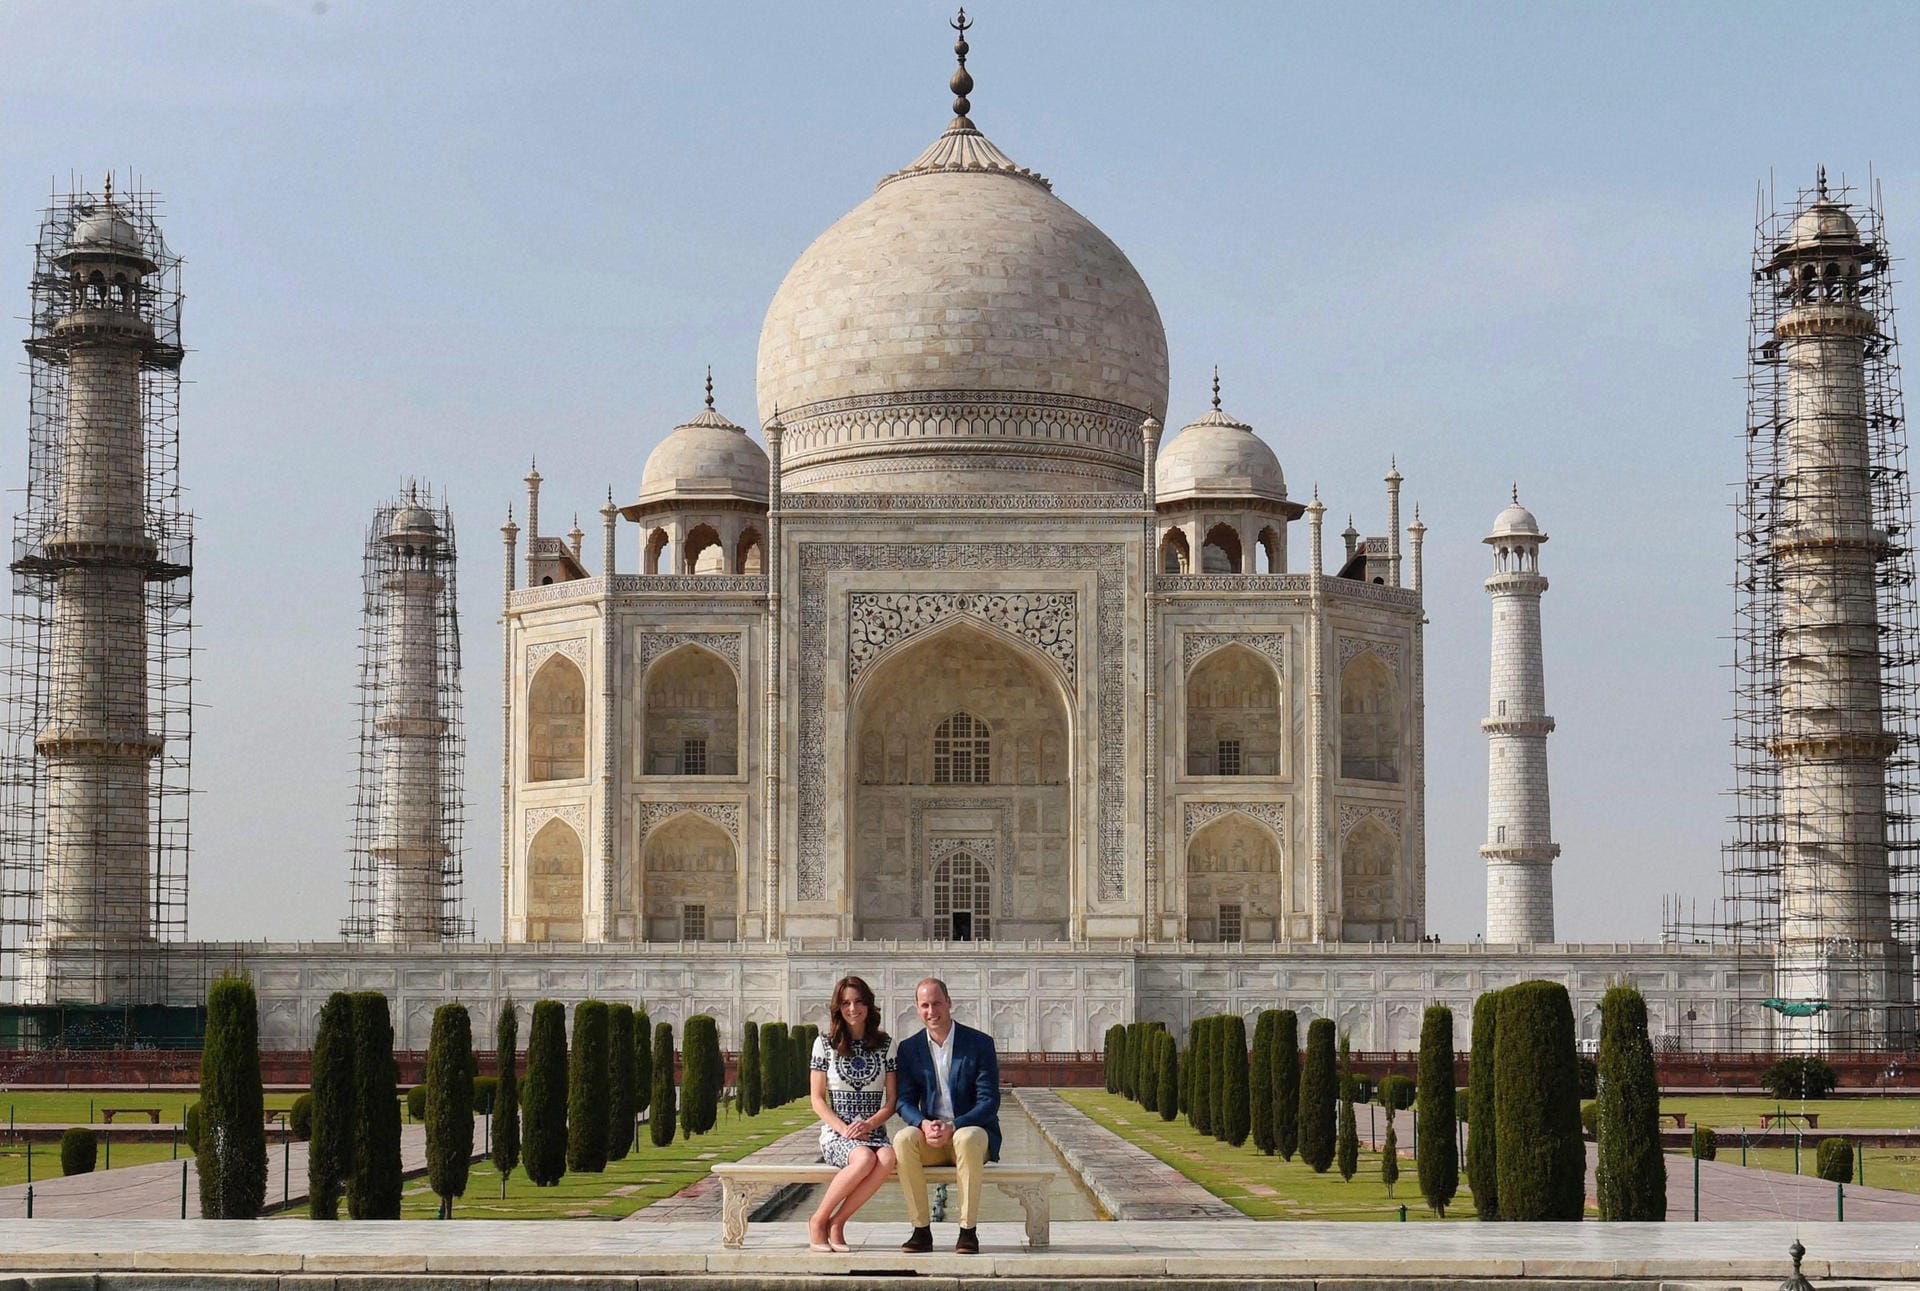 William und Kate auf Dianas Spuren: Beim Besuch des Taj Mahal während ihrer Indien-Reise saßen sie auf derselben Bank, auf der 1992 schon Williams Mutter posiert hatte. Sie hatte das Mausoleum damals allein besucht und damit deutlich gemacht, wie schlecht es um die Ehe zwischen ihr und Prinz Charles steht. Davon kann bei ihrem Sohn nun allerdings keine Rede sein.